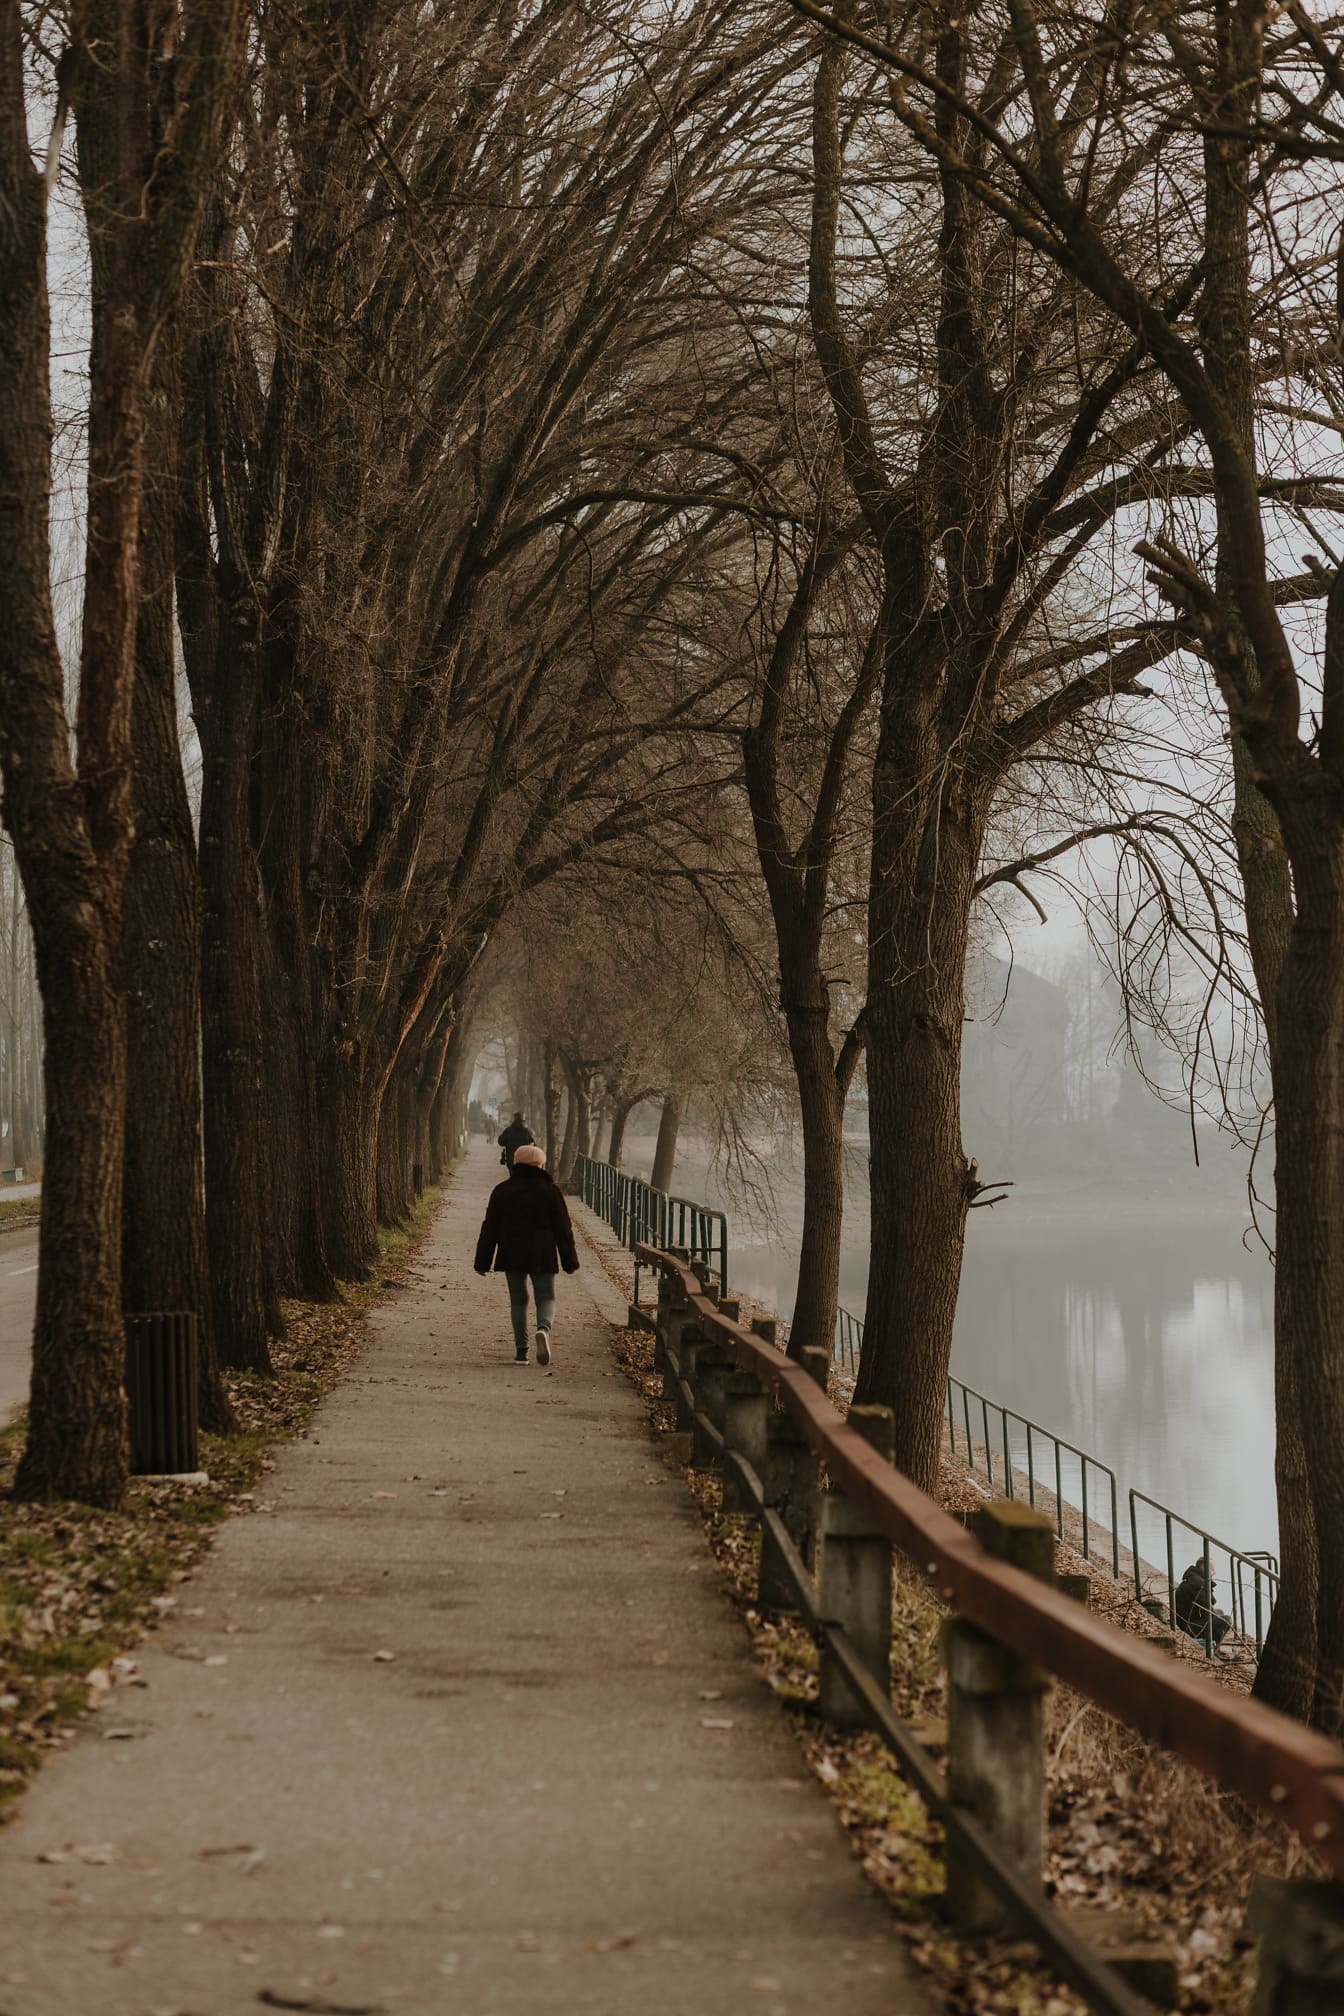 Pedestre caminhando em beco à beira do lago nebuloso